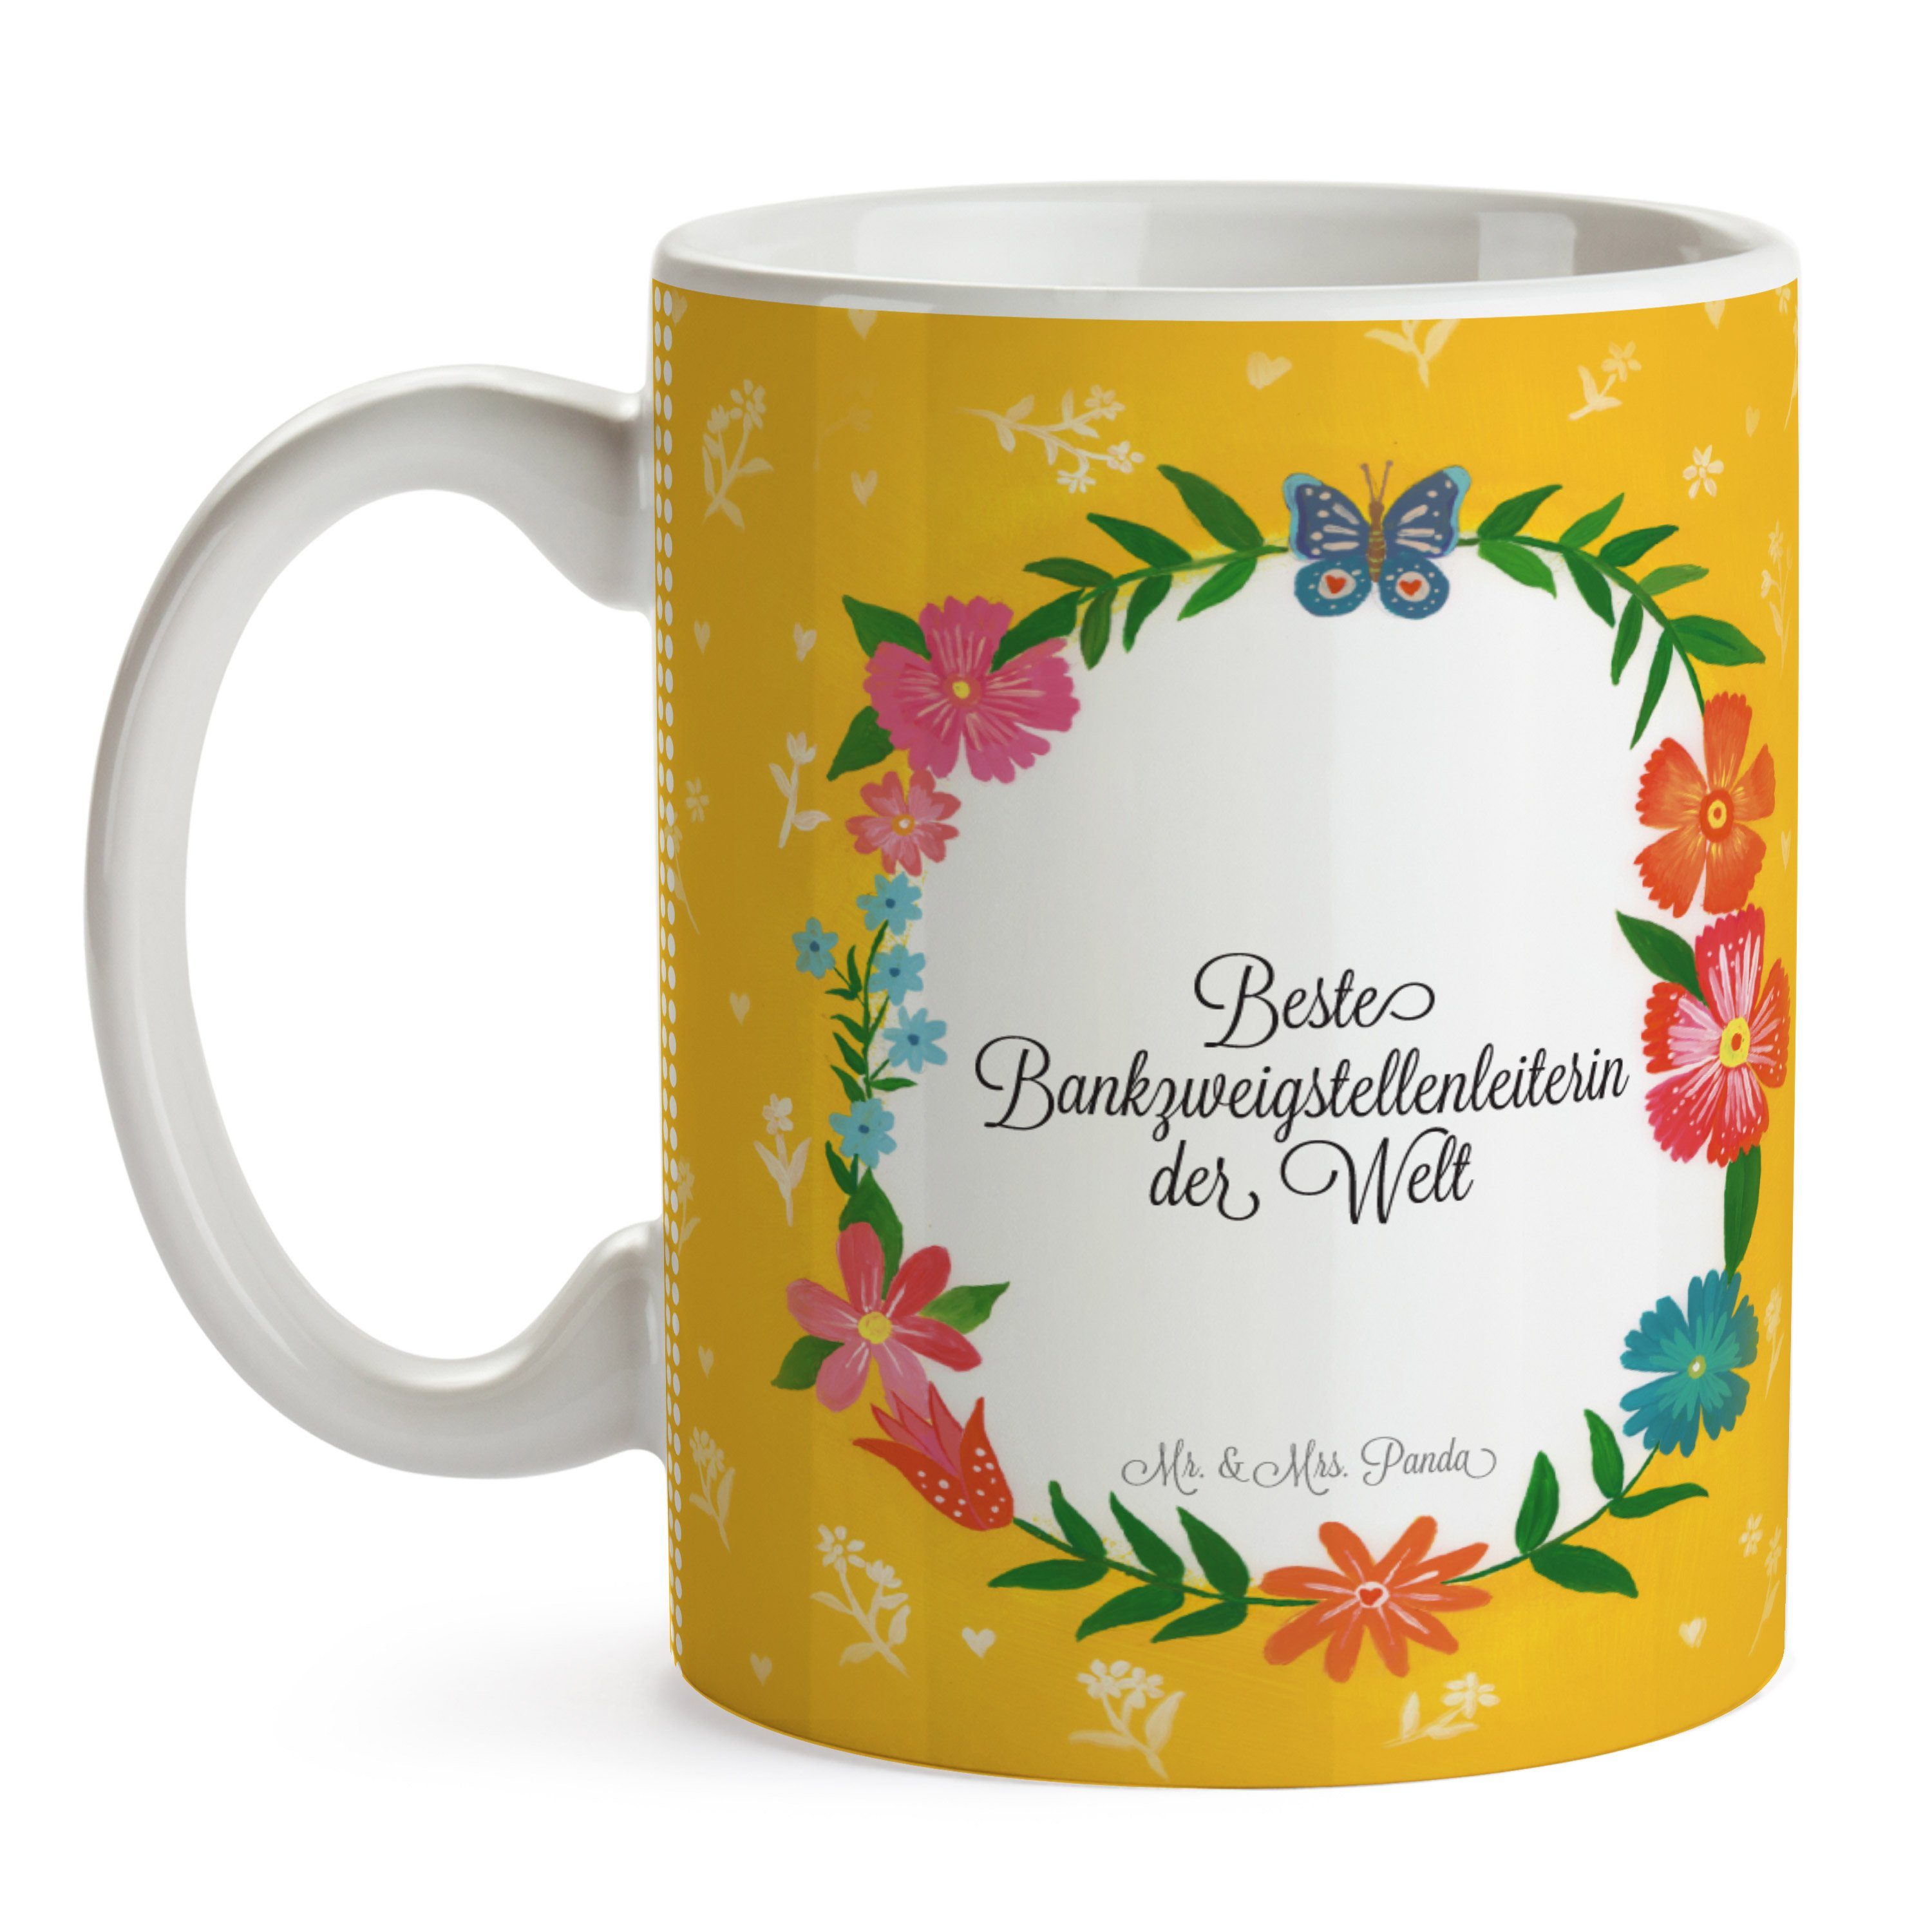 Mr. & Mrs. Panda Tasse Keramik - Gratulation, Geschenk, Abschied, Kaffeebec, Bankzweigstellenleiterin